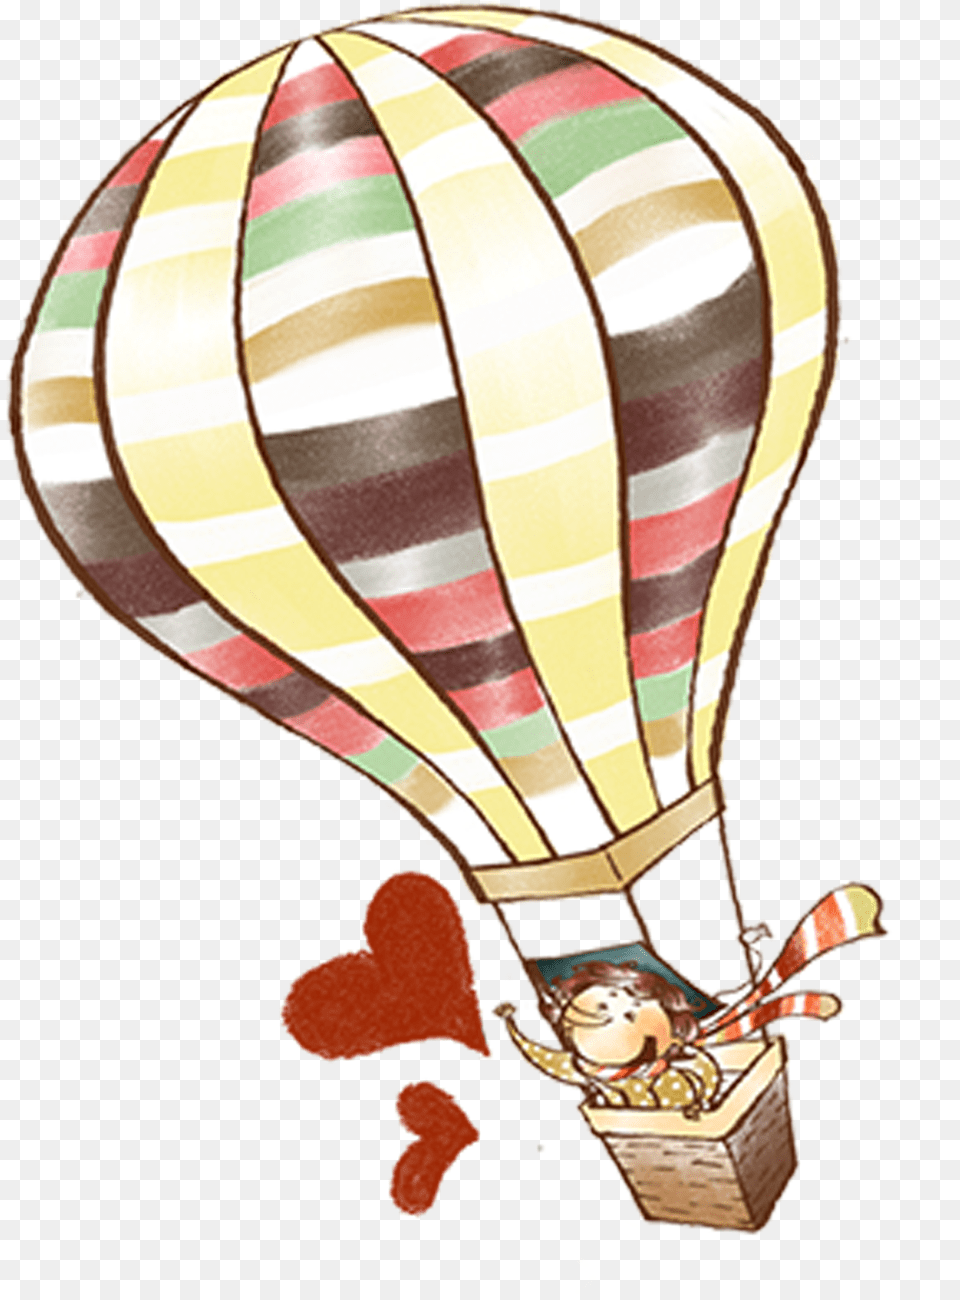 Hot Air Balloon Element Drawing Hot Air Balloons, Aircraft, Hot Air Balloon, Transportation, Vehicle Free Png Download